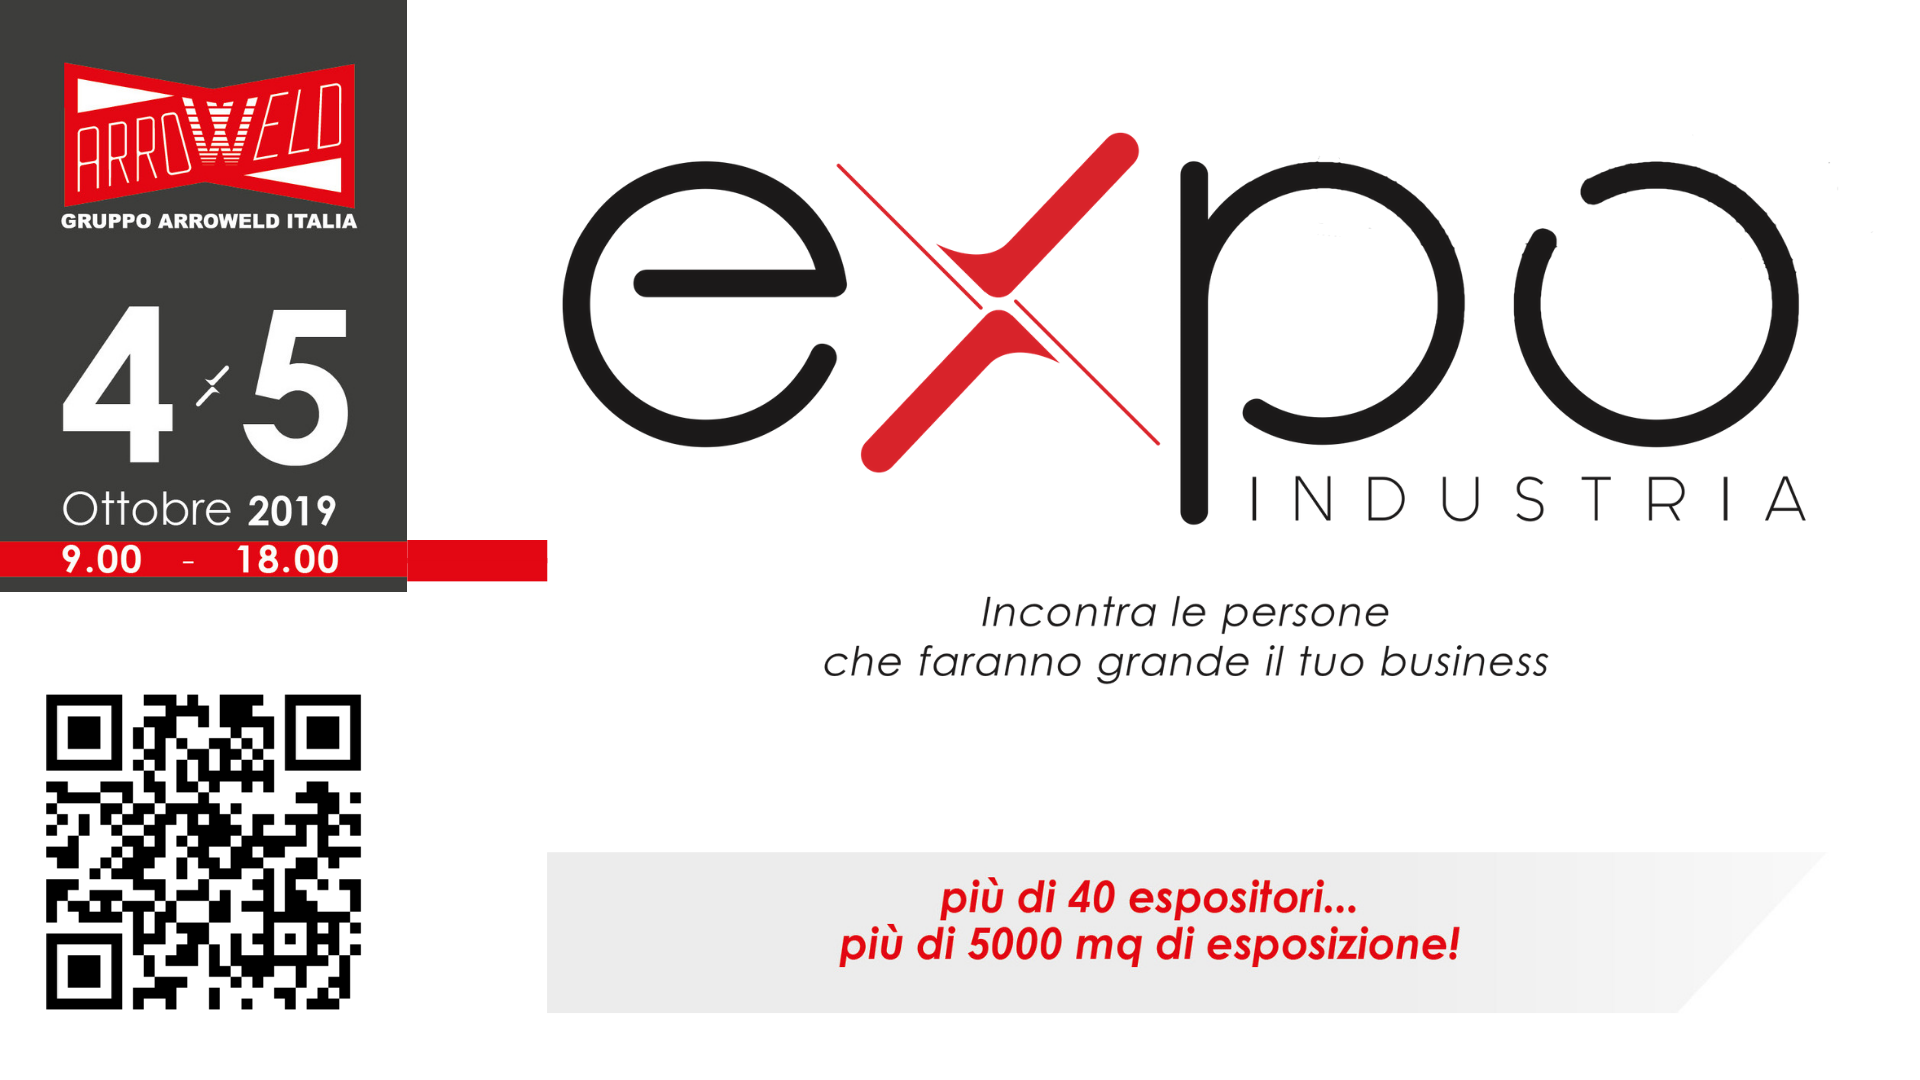 Expo Industria